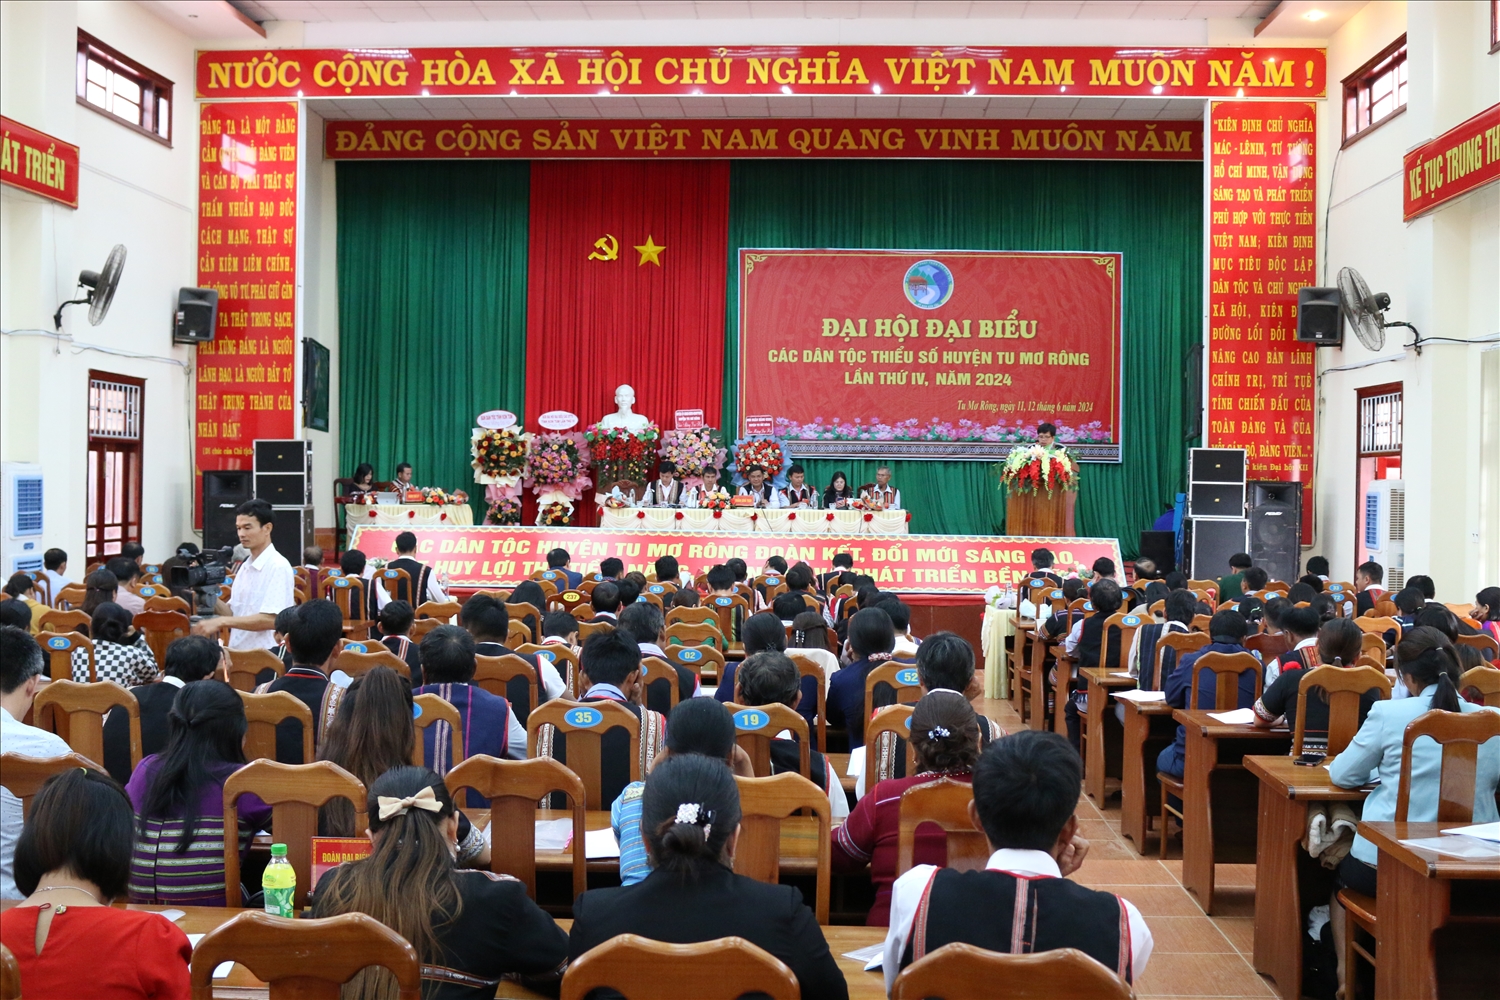 Quang cảnh Đại hội Đại biểu các DTTS huyện Tu Mơ Rông lần thứ IV